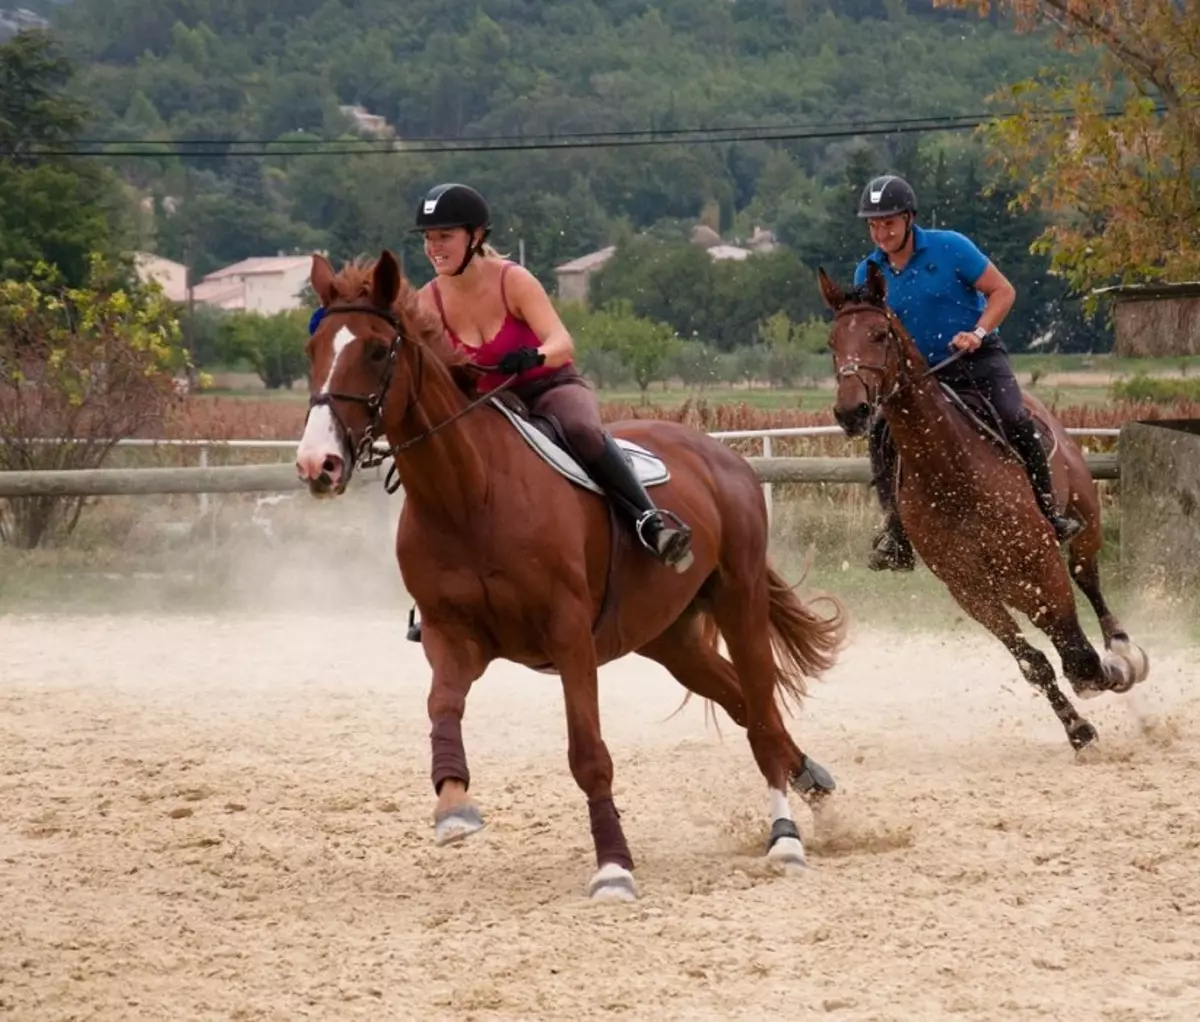 Cavalls corrents: Quin tipus de funcionament és considerat el més ràpid? Com estan els cavalls corren trot i allyr? La forma més ràpida i més incòmode de conduir un cavall 19169_24